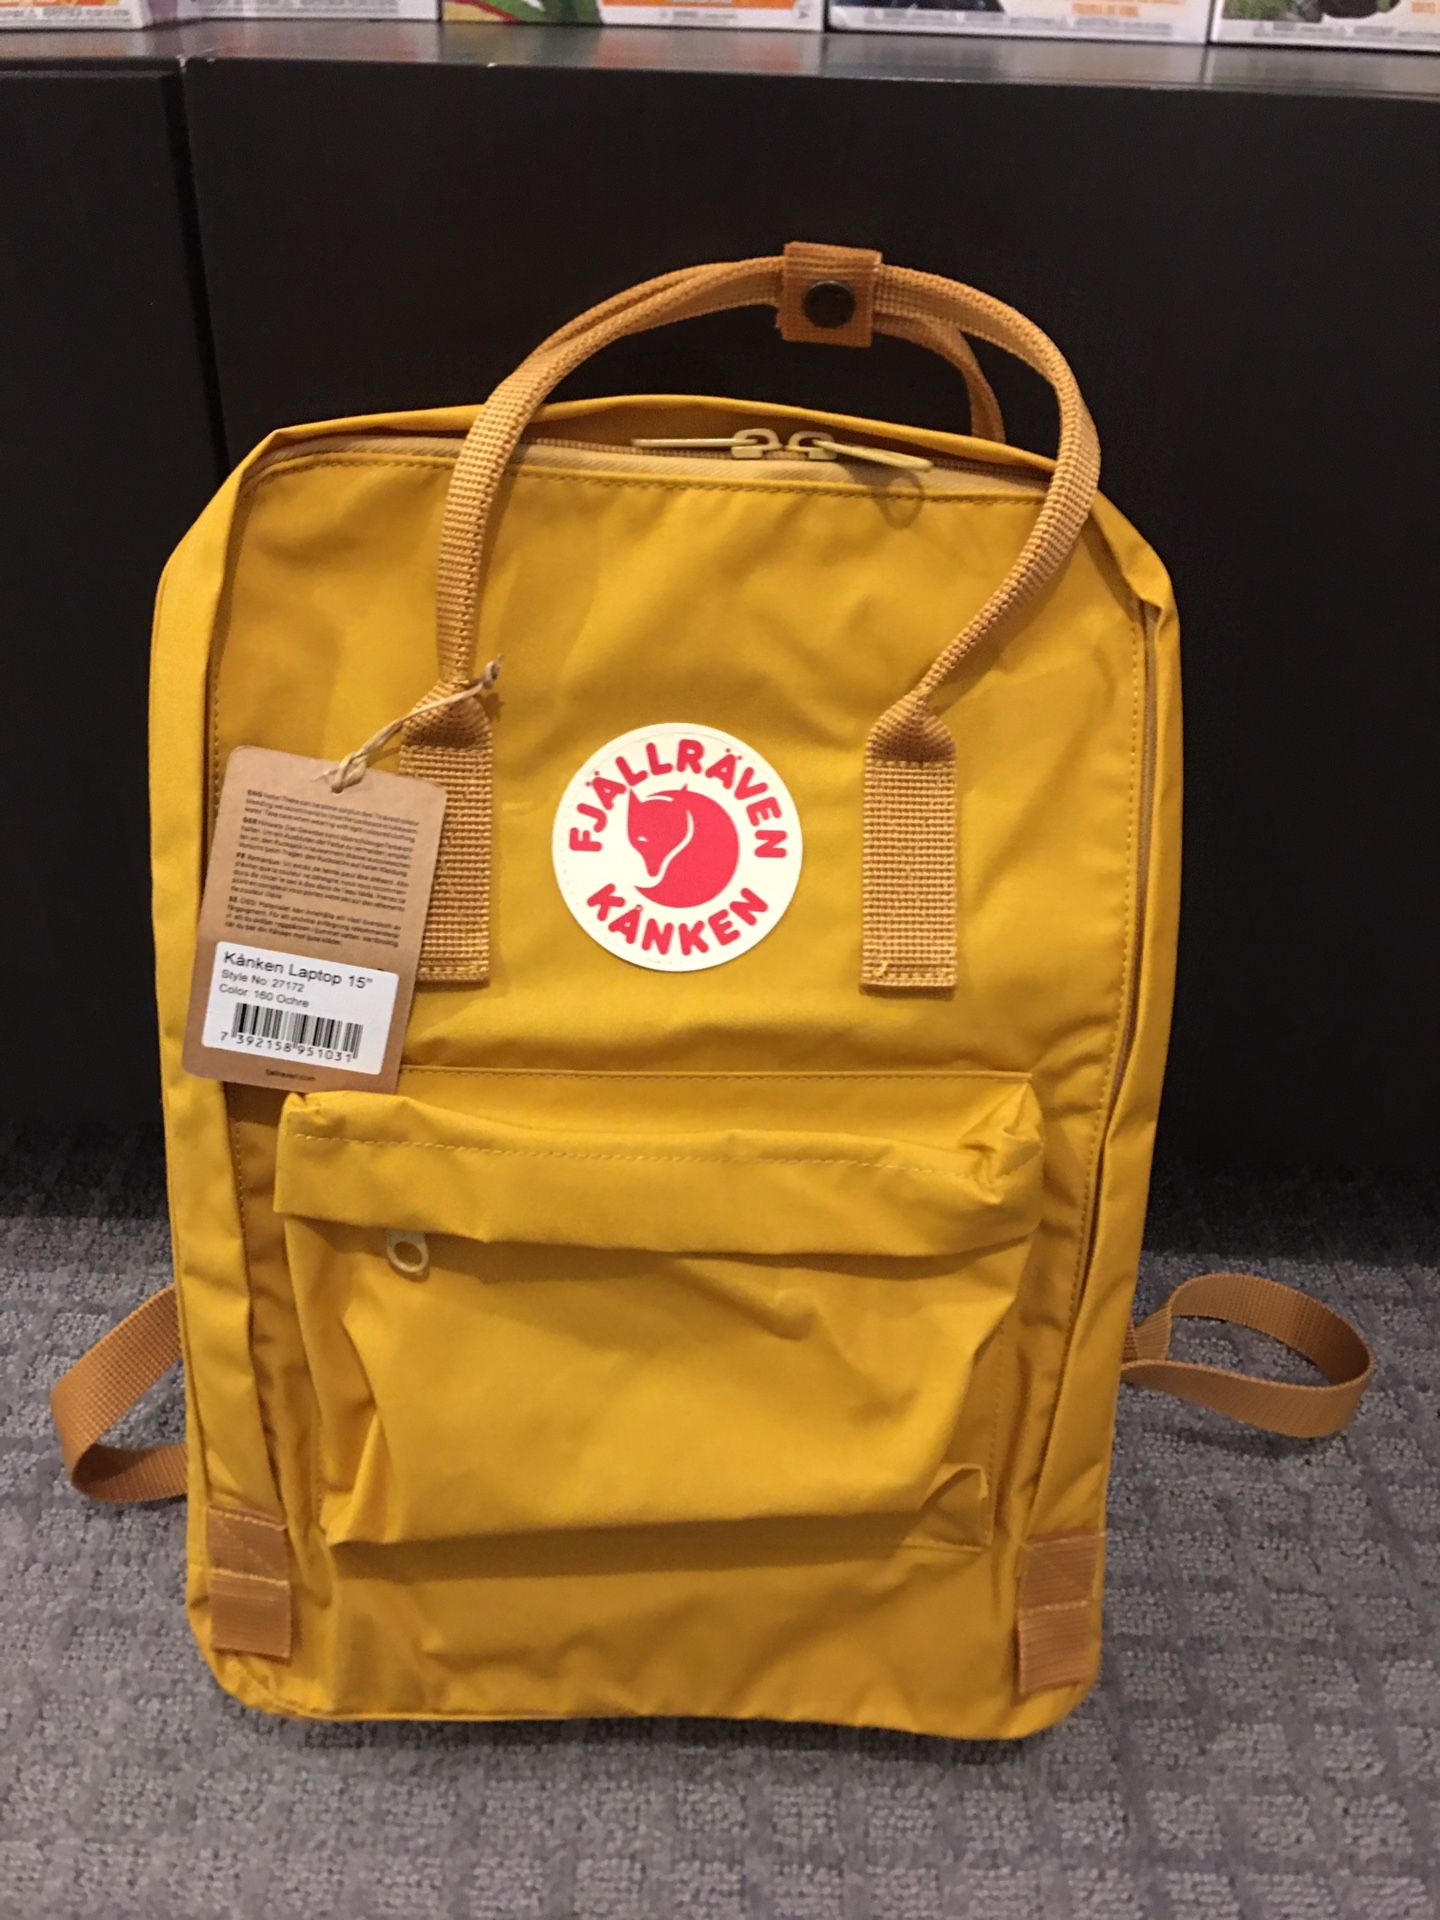 Kanken 15” laptop backpack